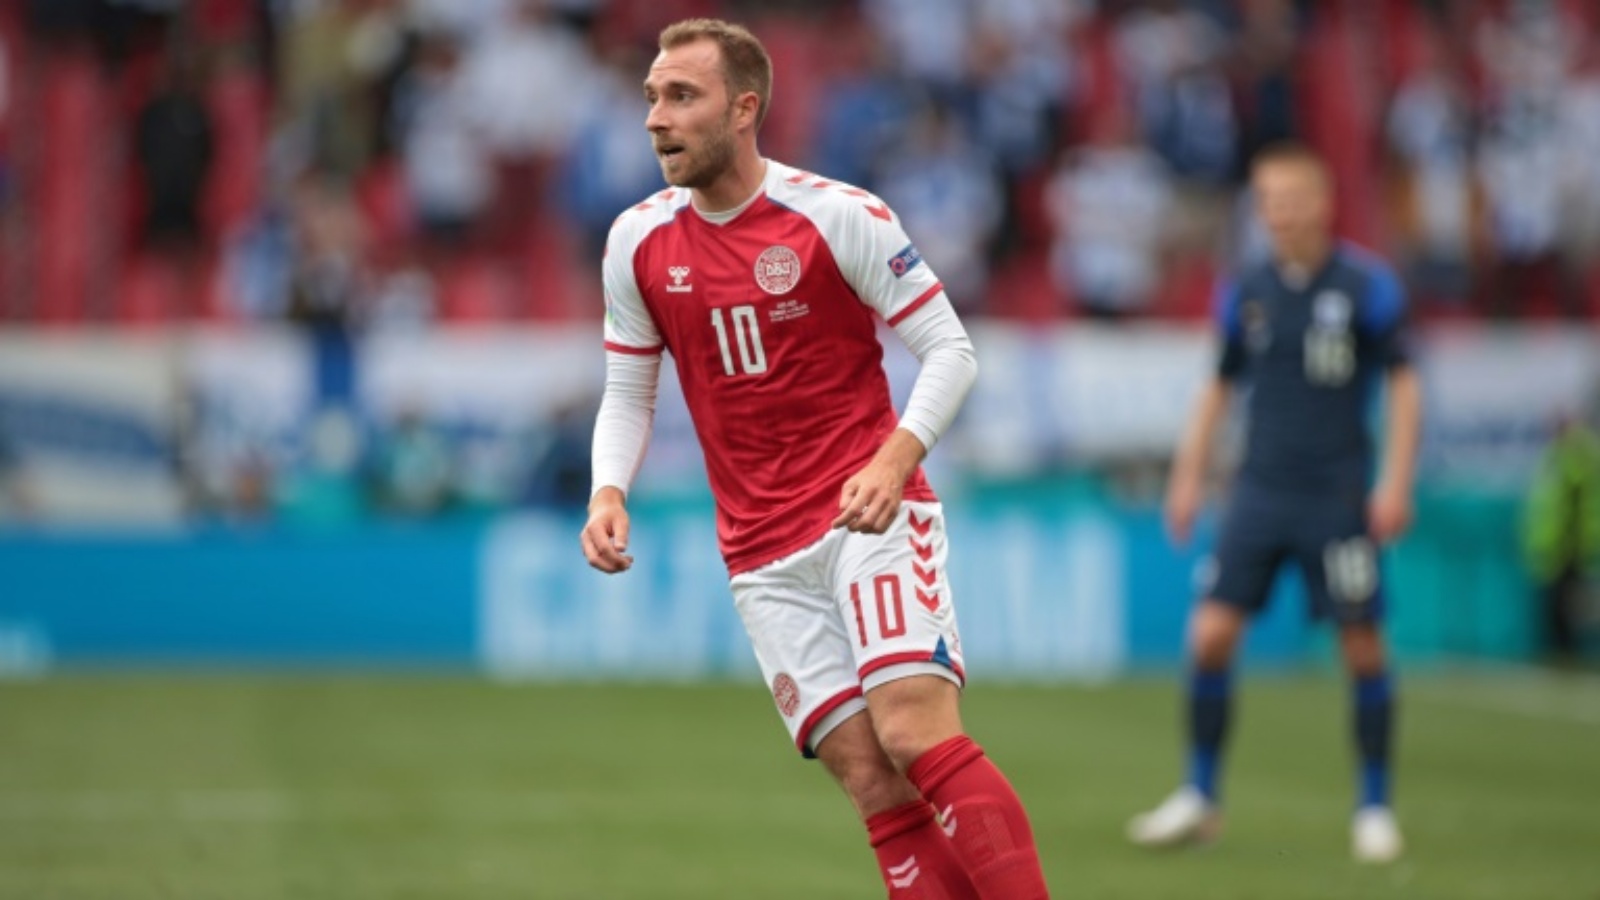 إريكسن تعرّض لسكتة قلبية في المباراة الأولى للدنمارك في كأس أوروبا ضد فنلندا في كوبنهاغن في 12 حزيران/يونيو 2021 وتم إنعاشه على أرض الملعب.